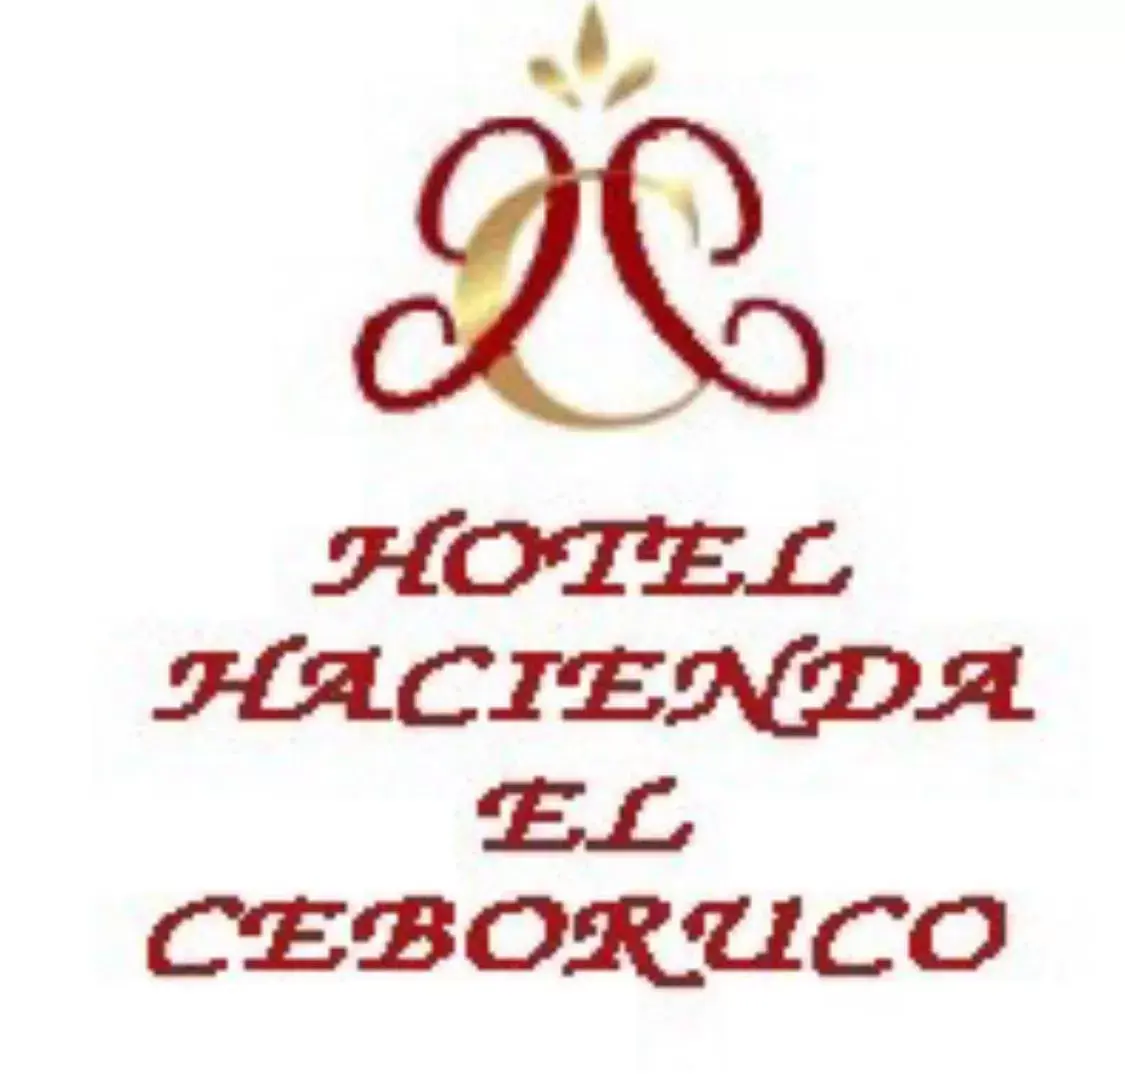 Logo/Certificate/Sign in Hotel Hacienda el Ceboruco